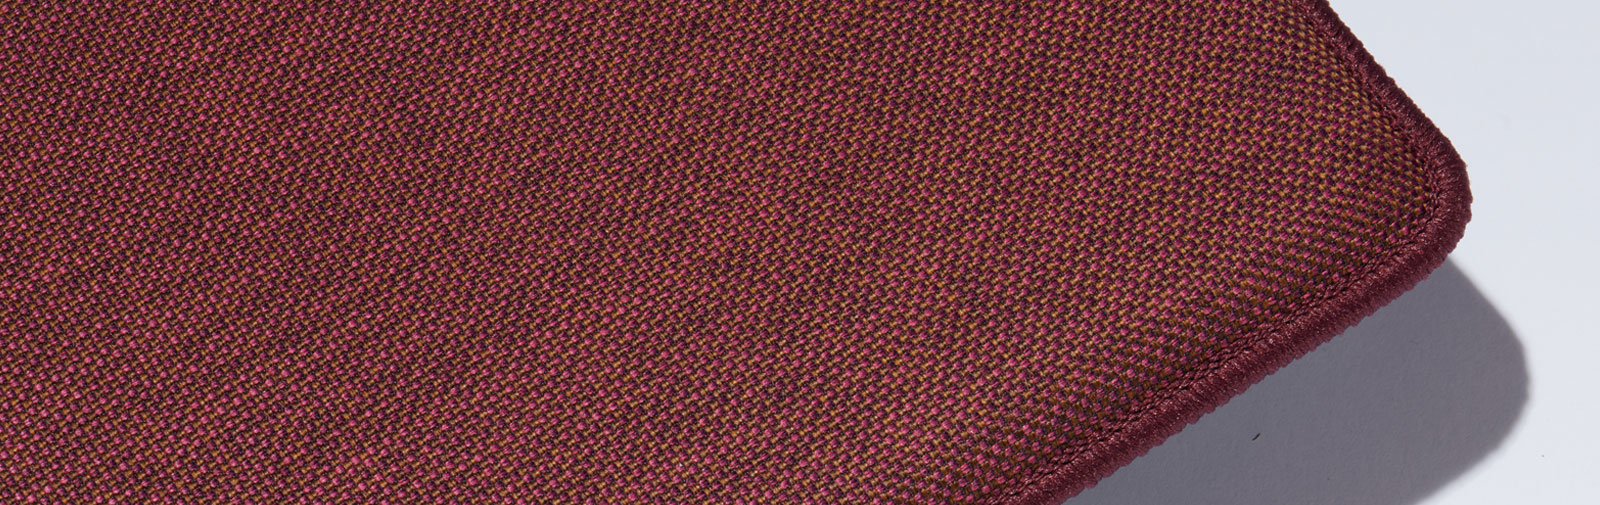 Musterpolster Bankauflage Verano Farbcode 662 Farbe lila